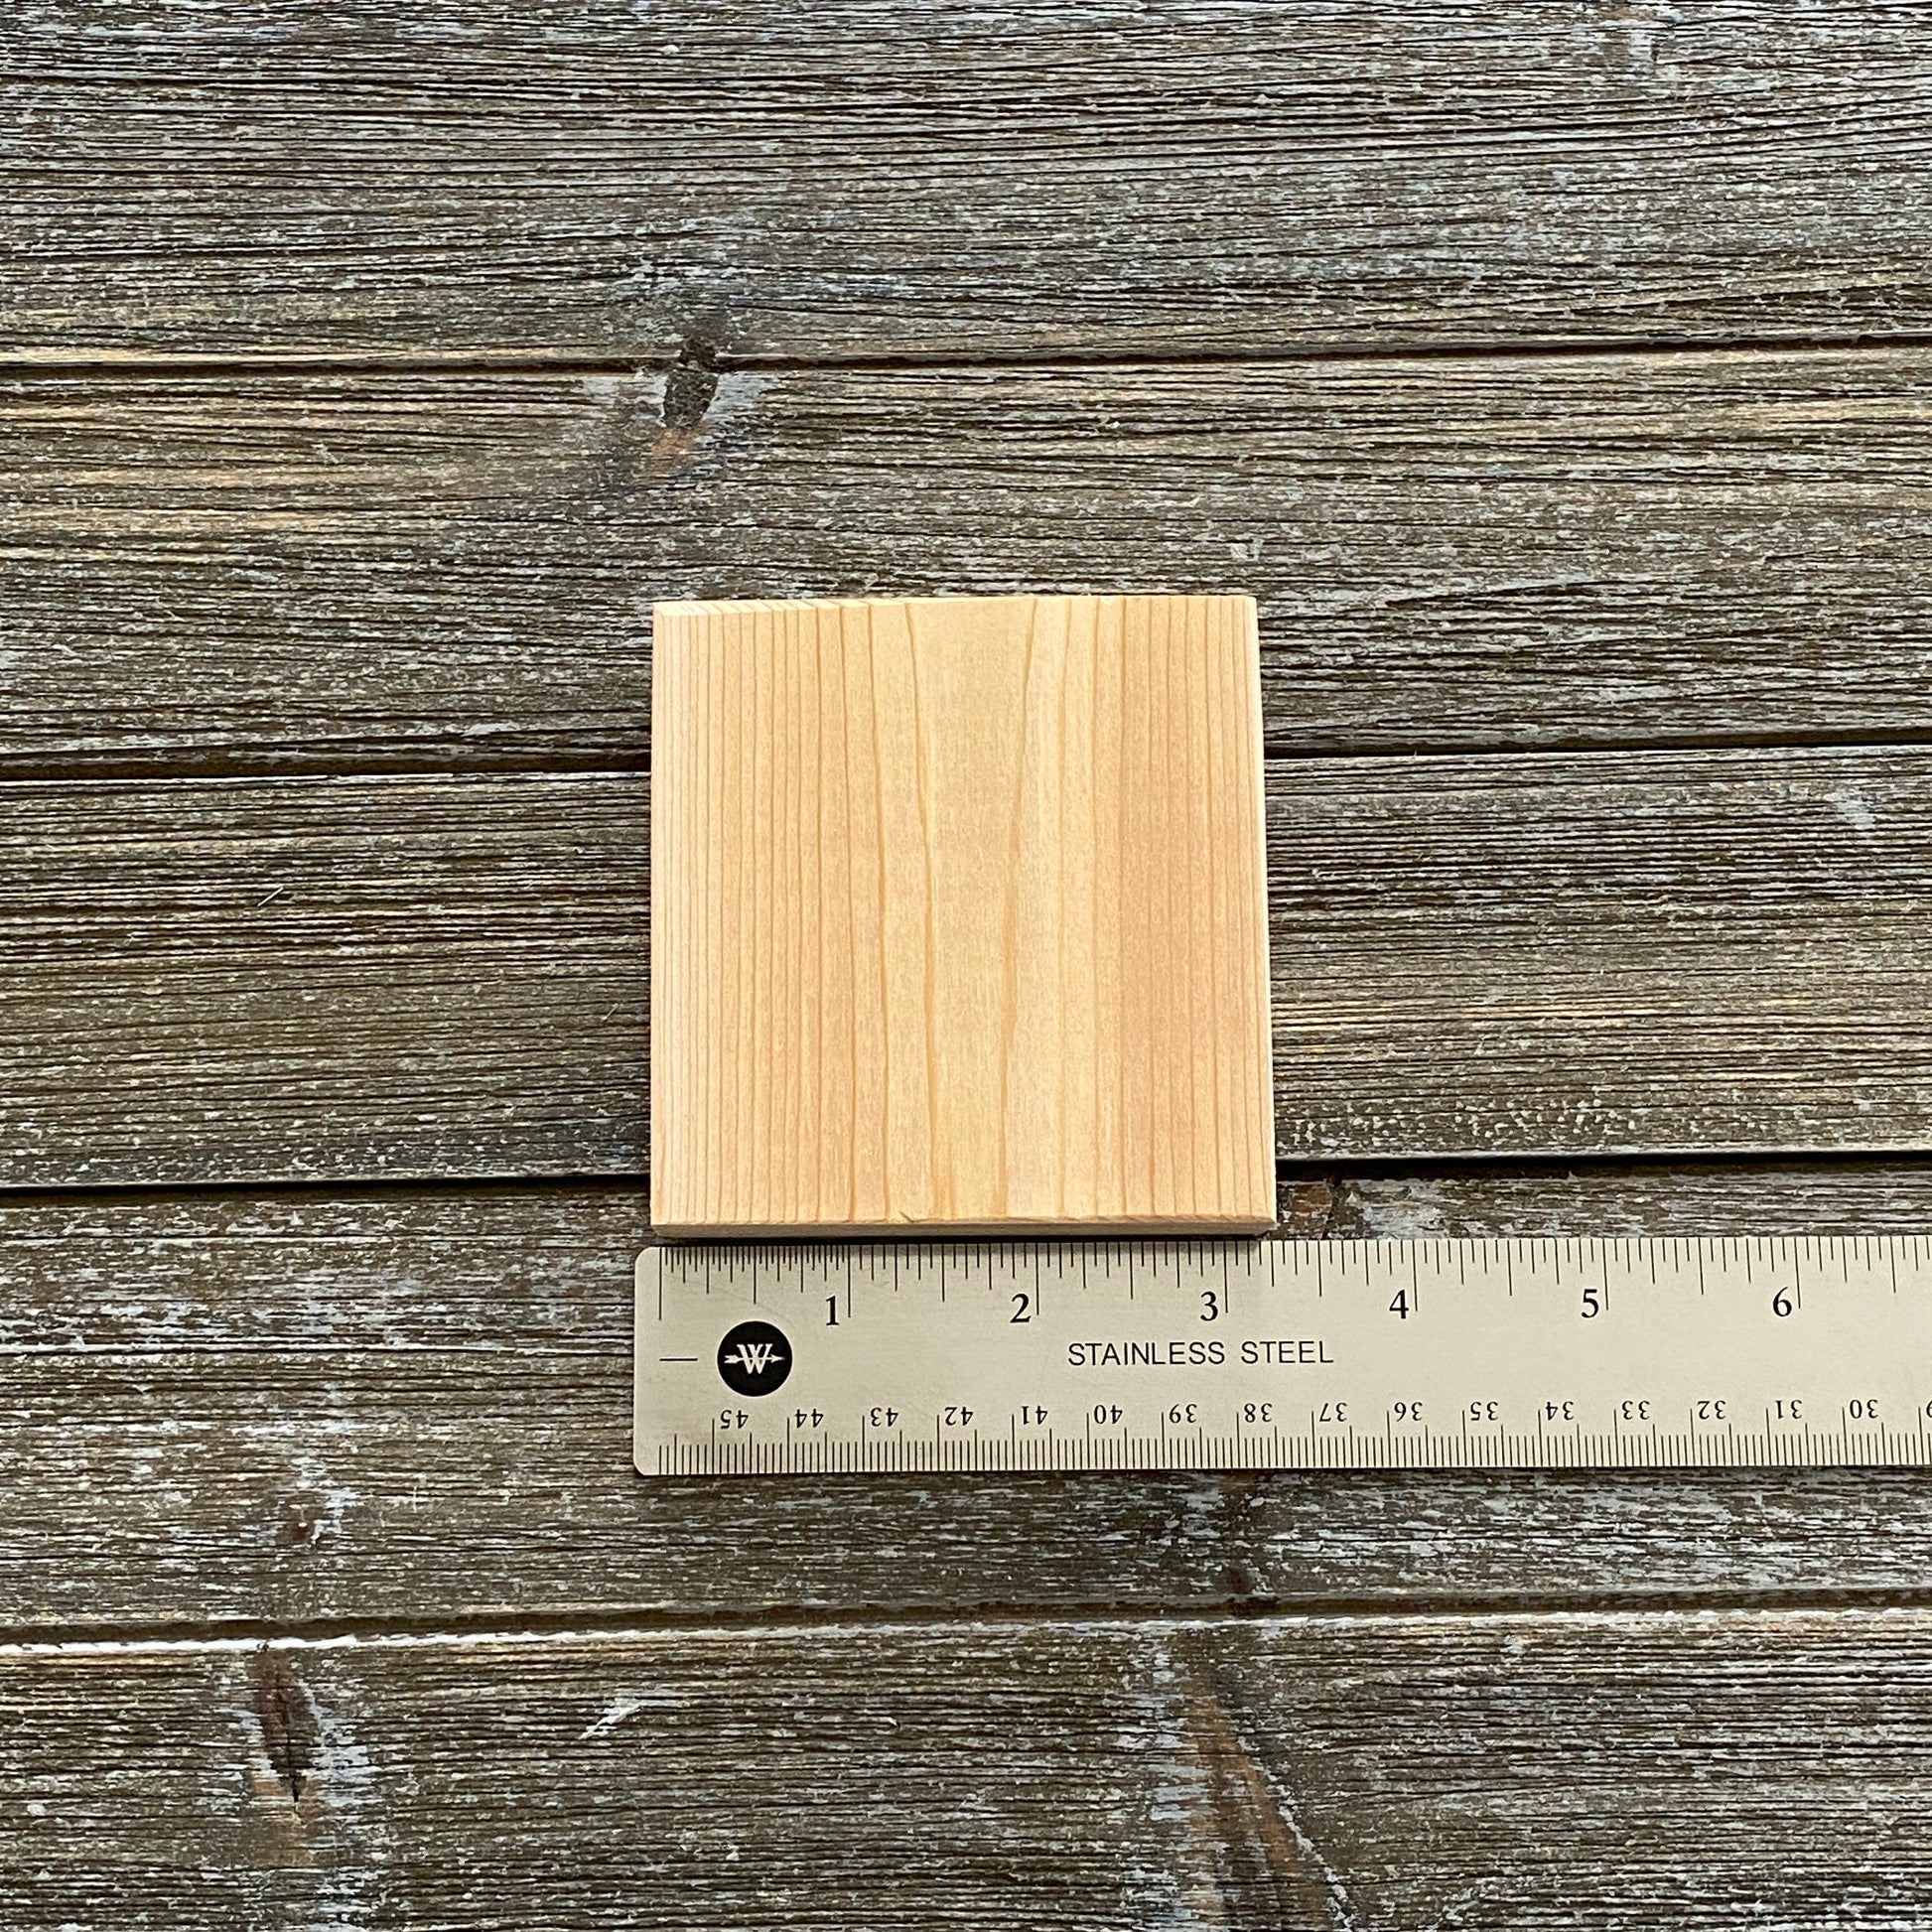 Unfinished Wood Squares for Crafts - 2 pc set – BKV Decor